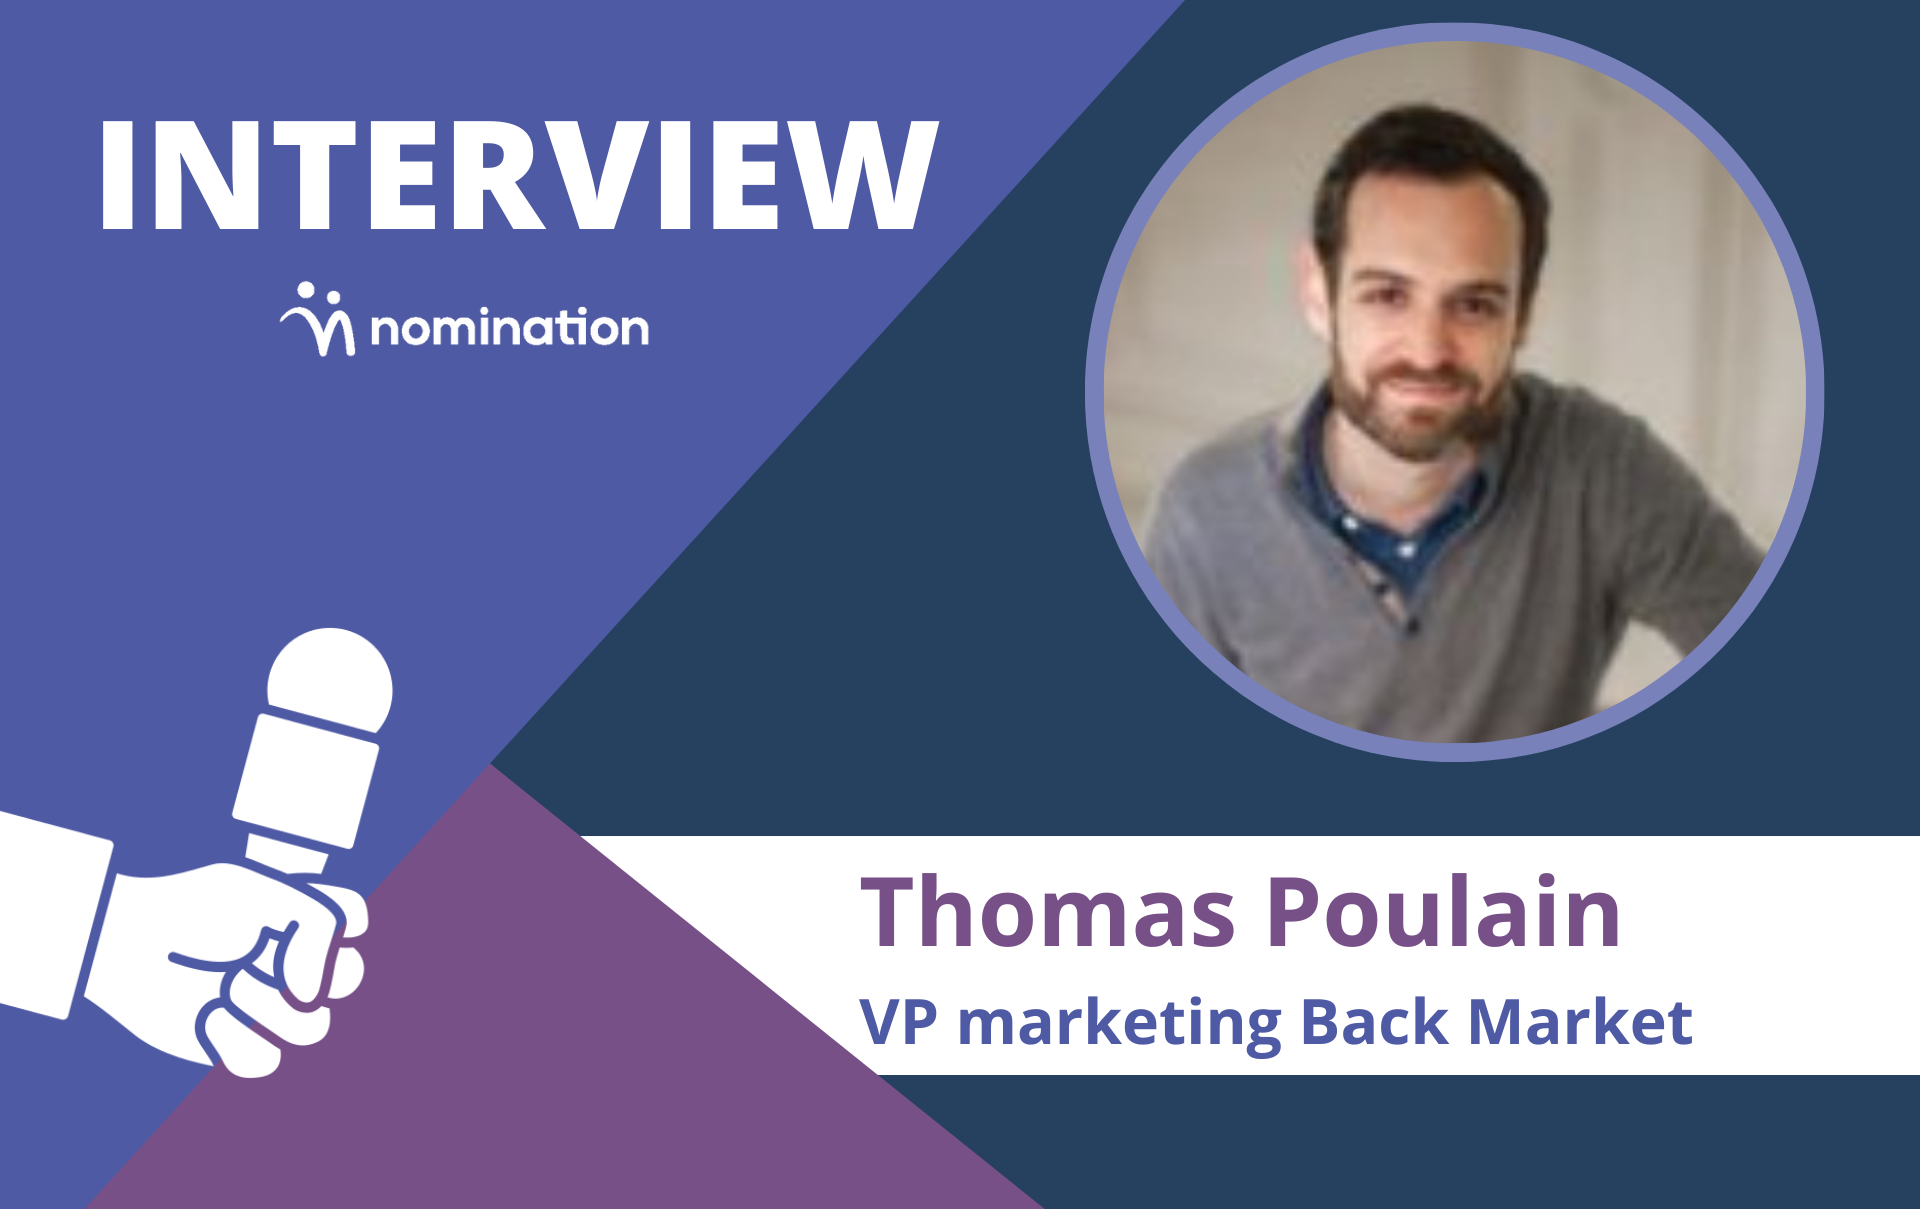 Thomas Poulain, VP marketing Back Market